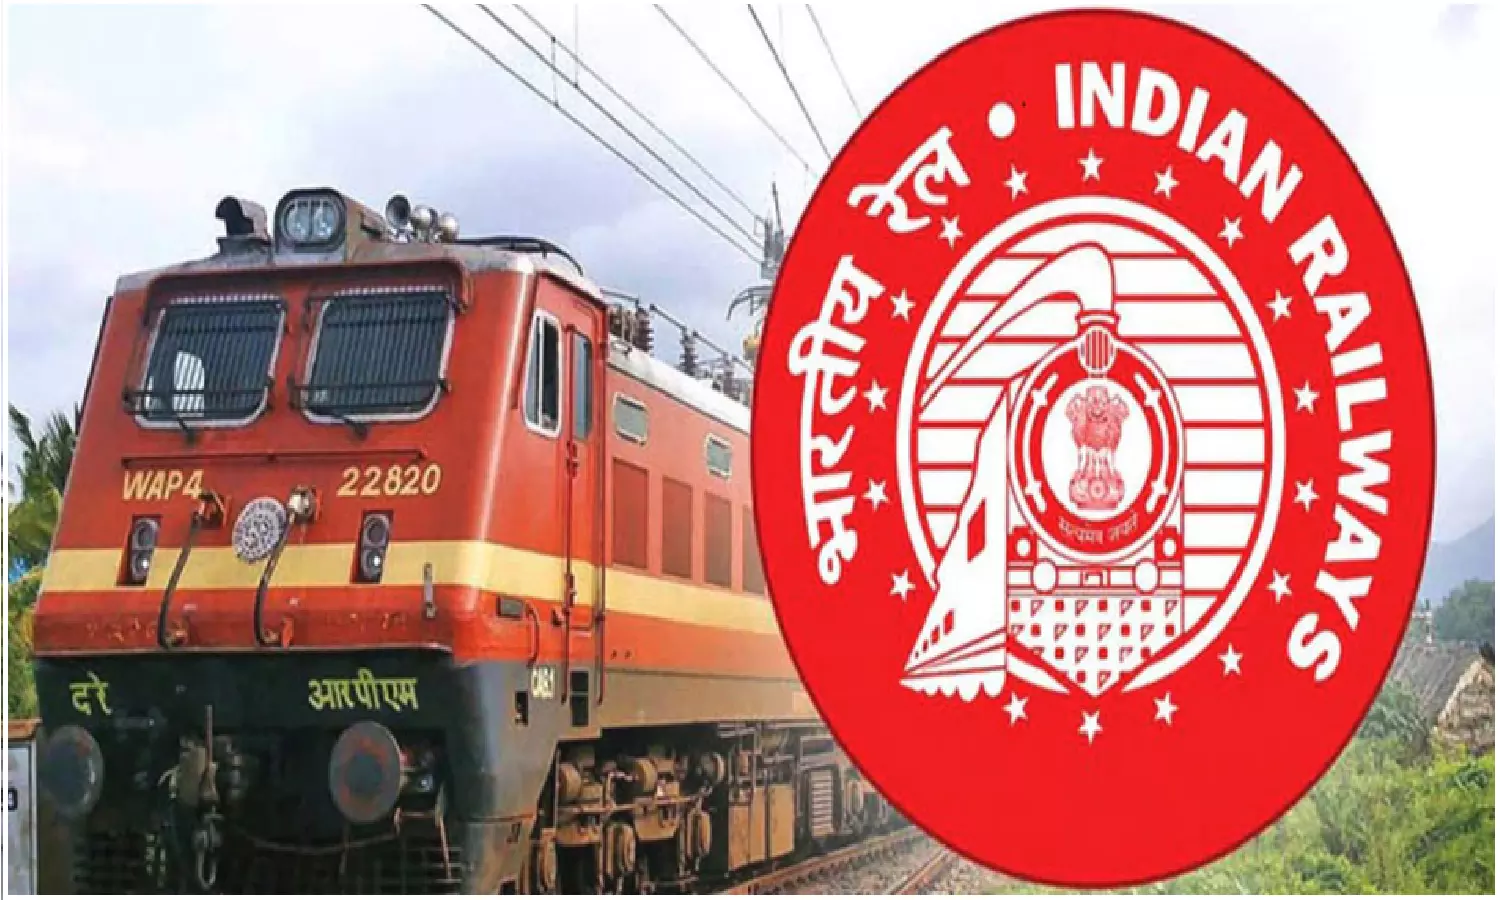 Sarkari Naukri: रेलवे में नौकरी पाने का सुनहरा अवसर आवेदन के लिए आज का समय शेष